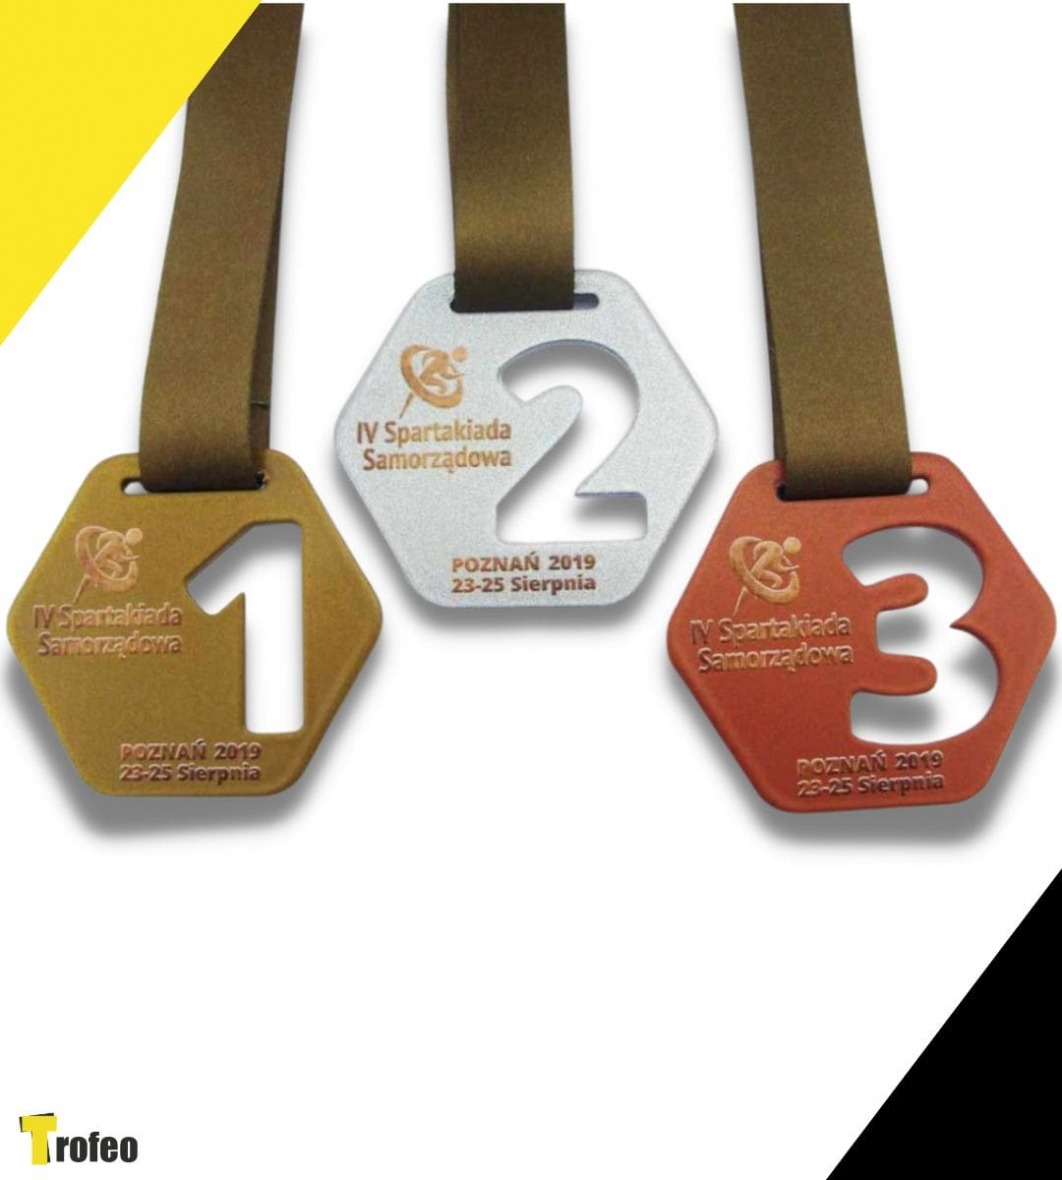 Ażurowe medale za pierwsze, drugie i trzecie miejsce